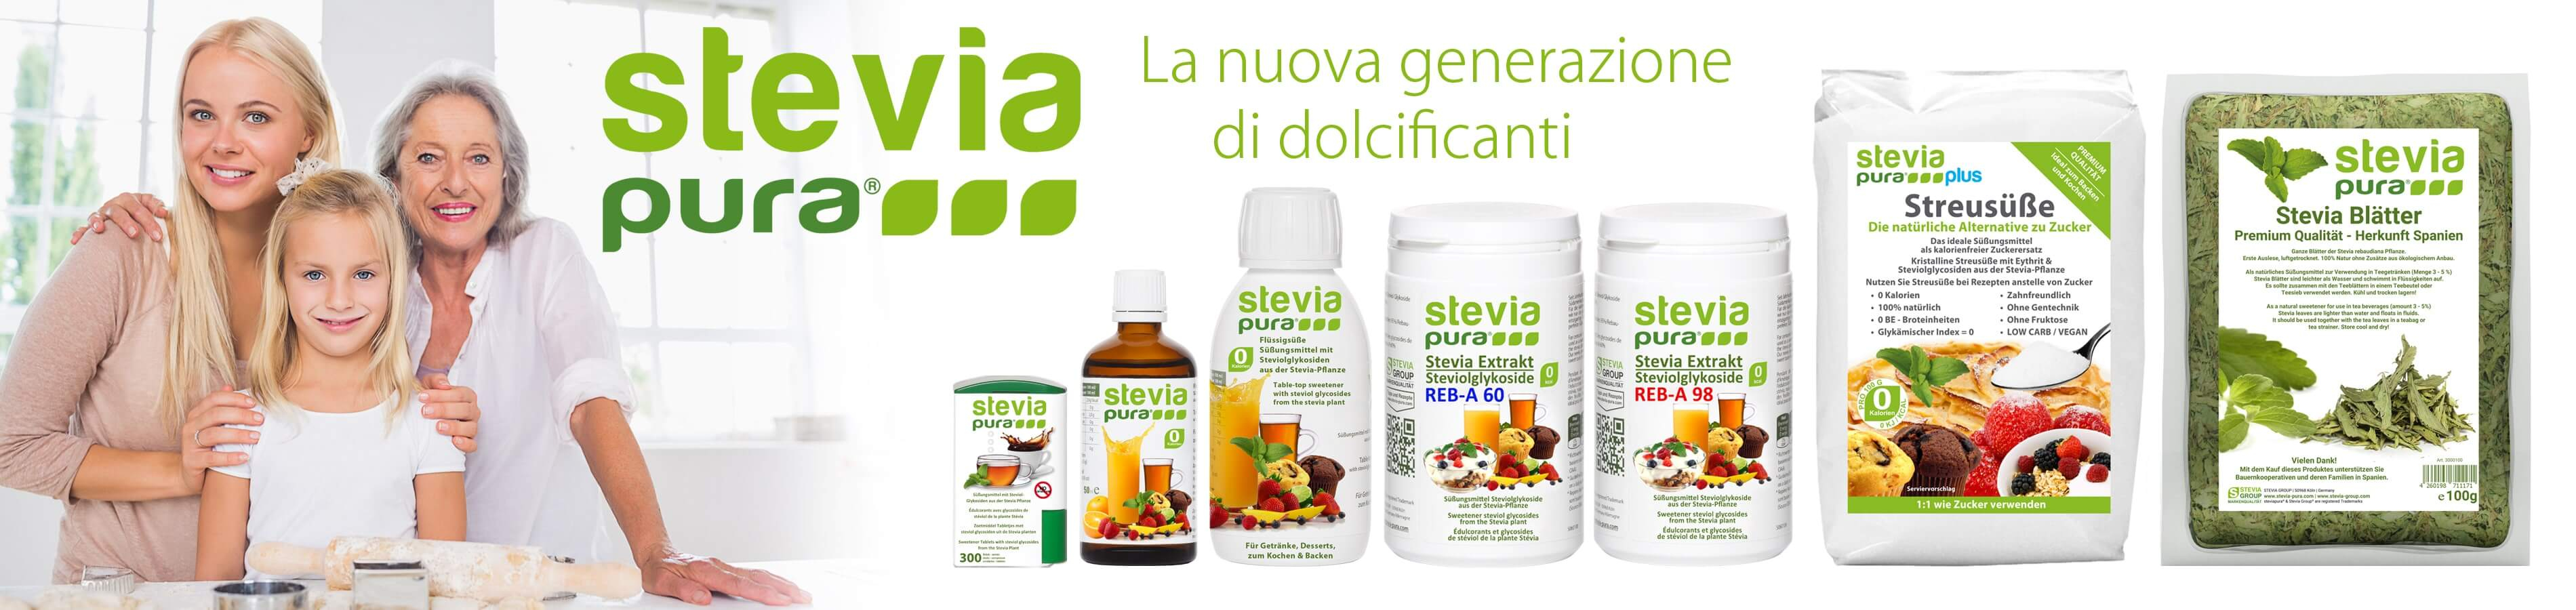 Comprare Stevia | Prodotti di alta qualità in sostituzione dello zucchero Stevia ed Eritritolo | steviapura